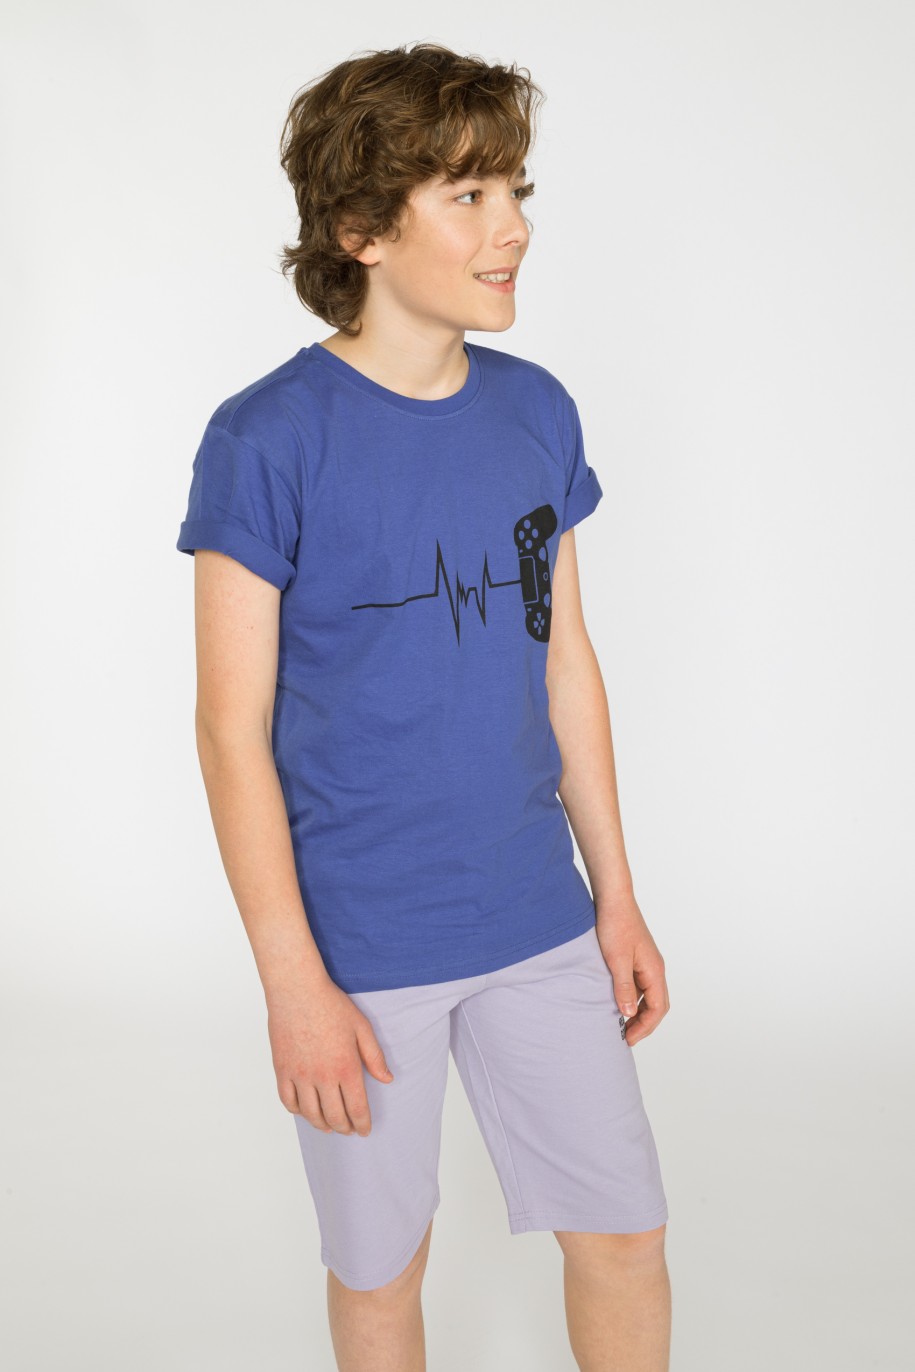 Niebieski t-shirt z nadrukiem dla chłopaka - 33908